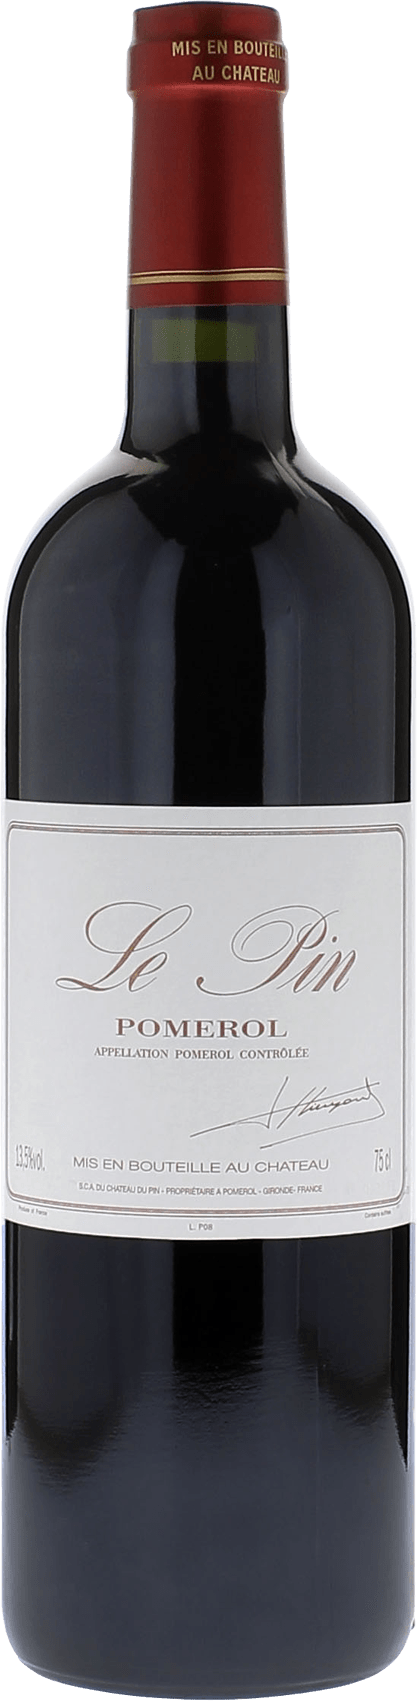 Le pin 2018  Pomerol, Bordeaux rouge